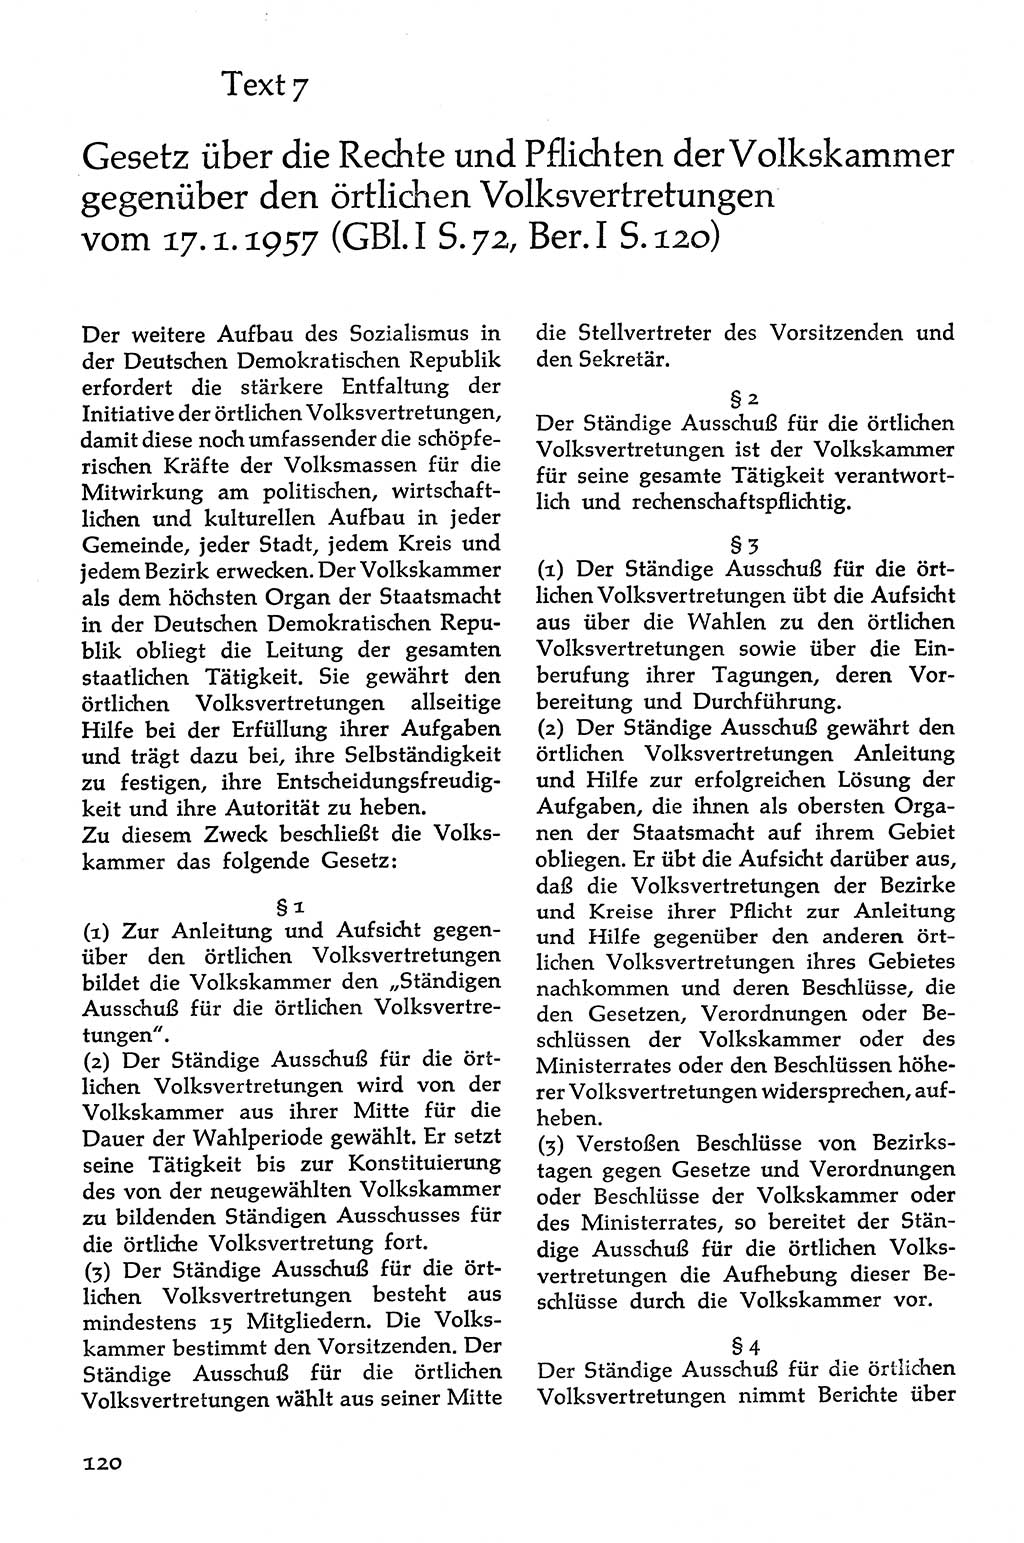 Volksdemokratische Ordnung in Mitteldeutschland [Deutsche Demokratische Republik (DDR)], Texte zur verfassungsrechtlichen Situation 1963, Seite 120 (Volksdem. Ordn. Md. DDR 1963, S. 120)